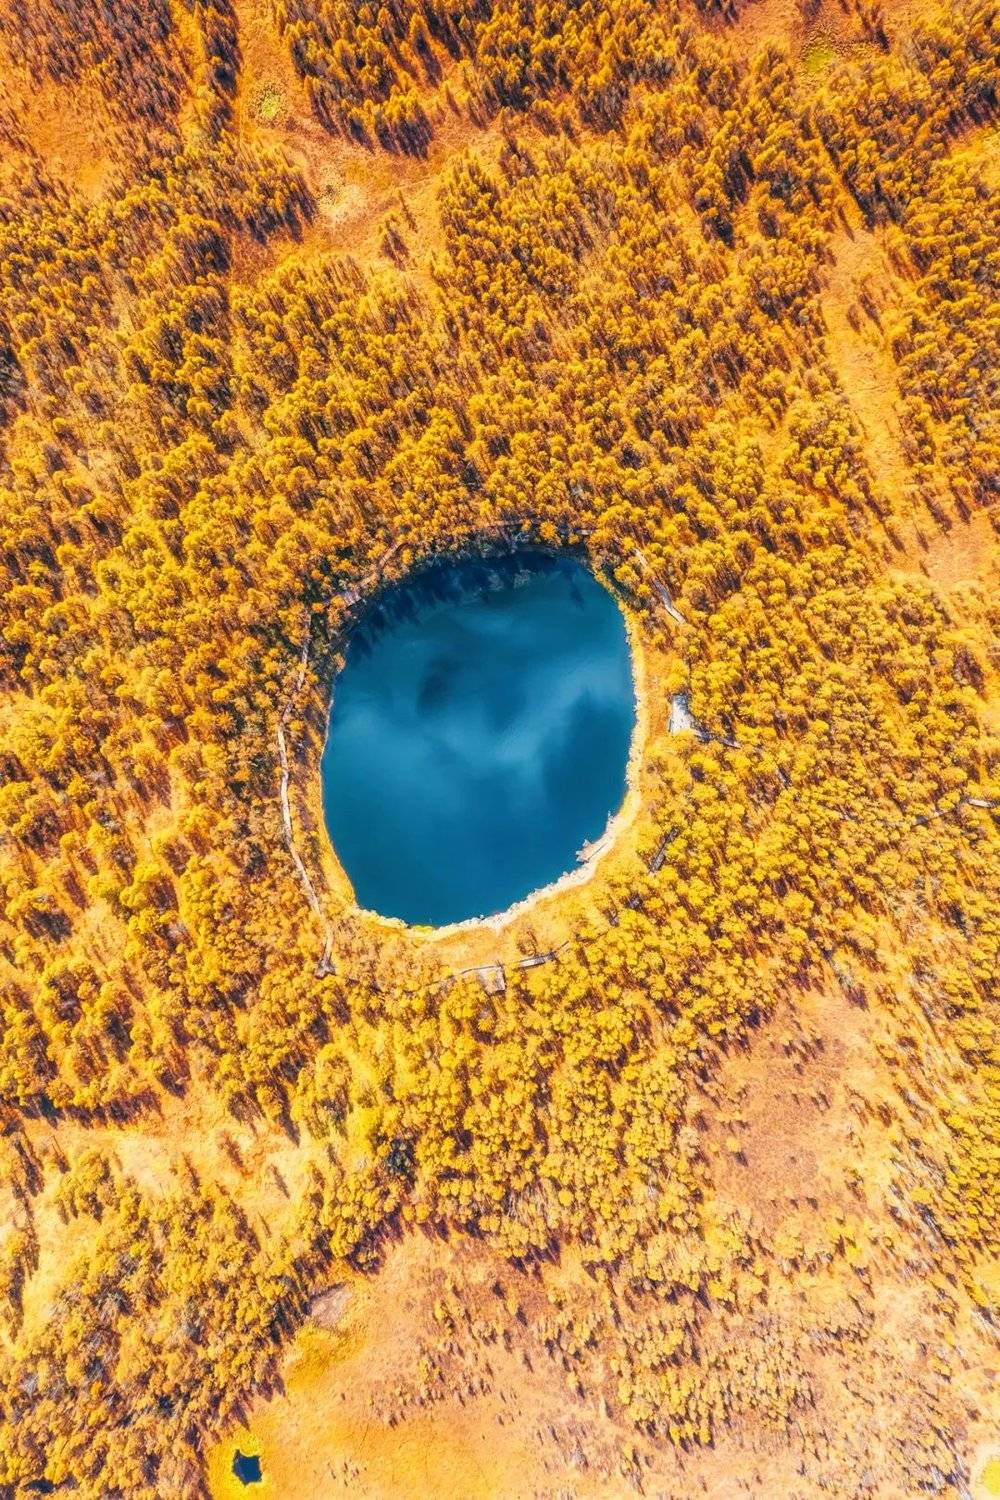 内蒙古兴安盟阿尔山国家森林公园地池秋景。摄影 / 焦潇翔